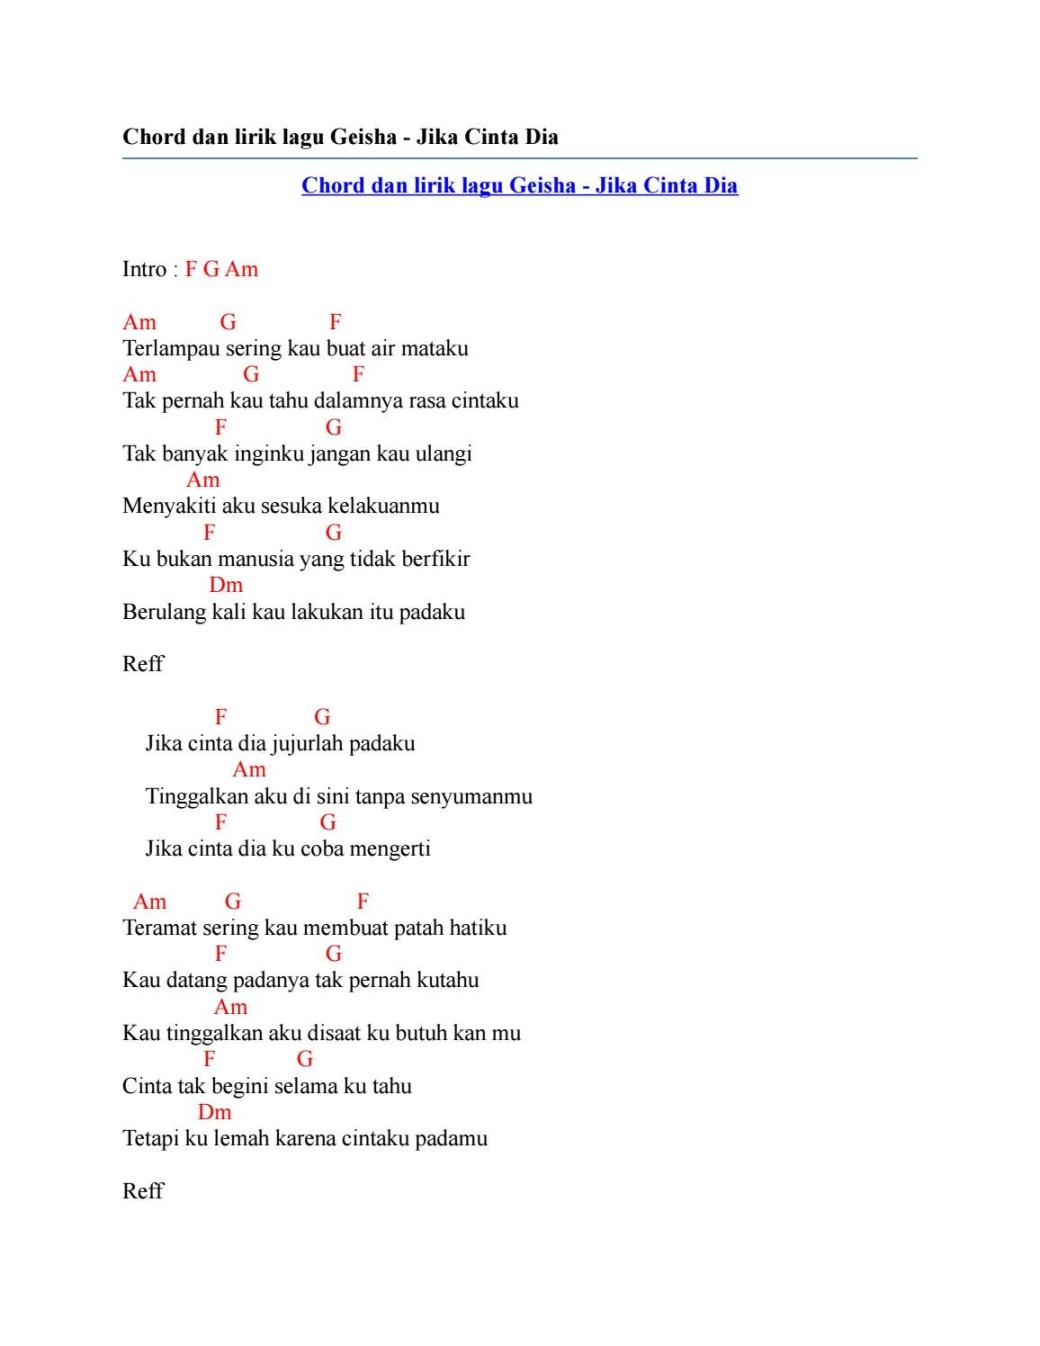 Chord dan lirik lagu geisha jika cinta dia by Chord Zila - Issuu